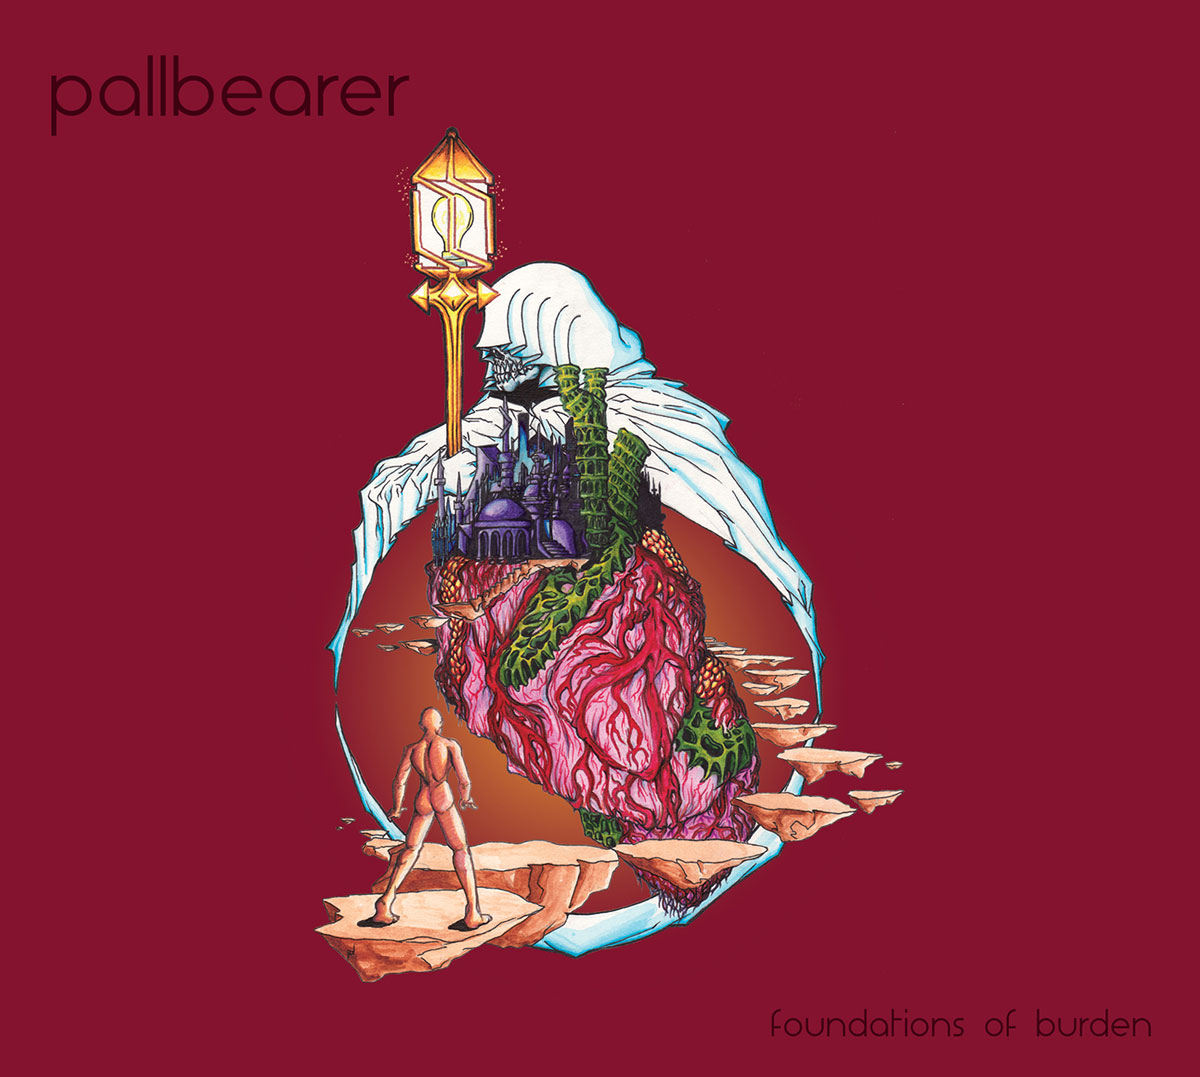  Pallbearer - Foundations Of Burden